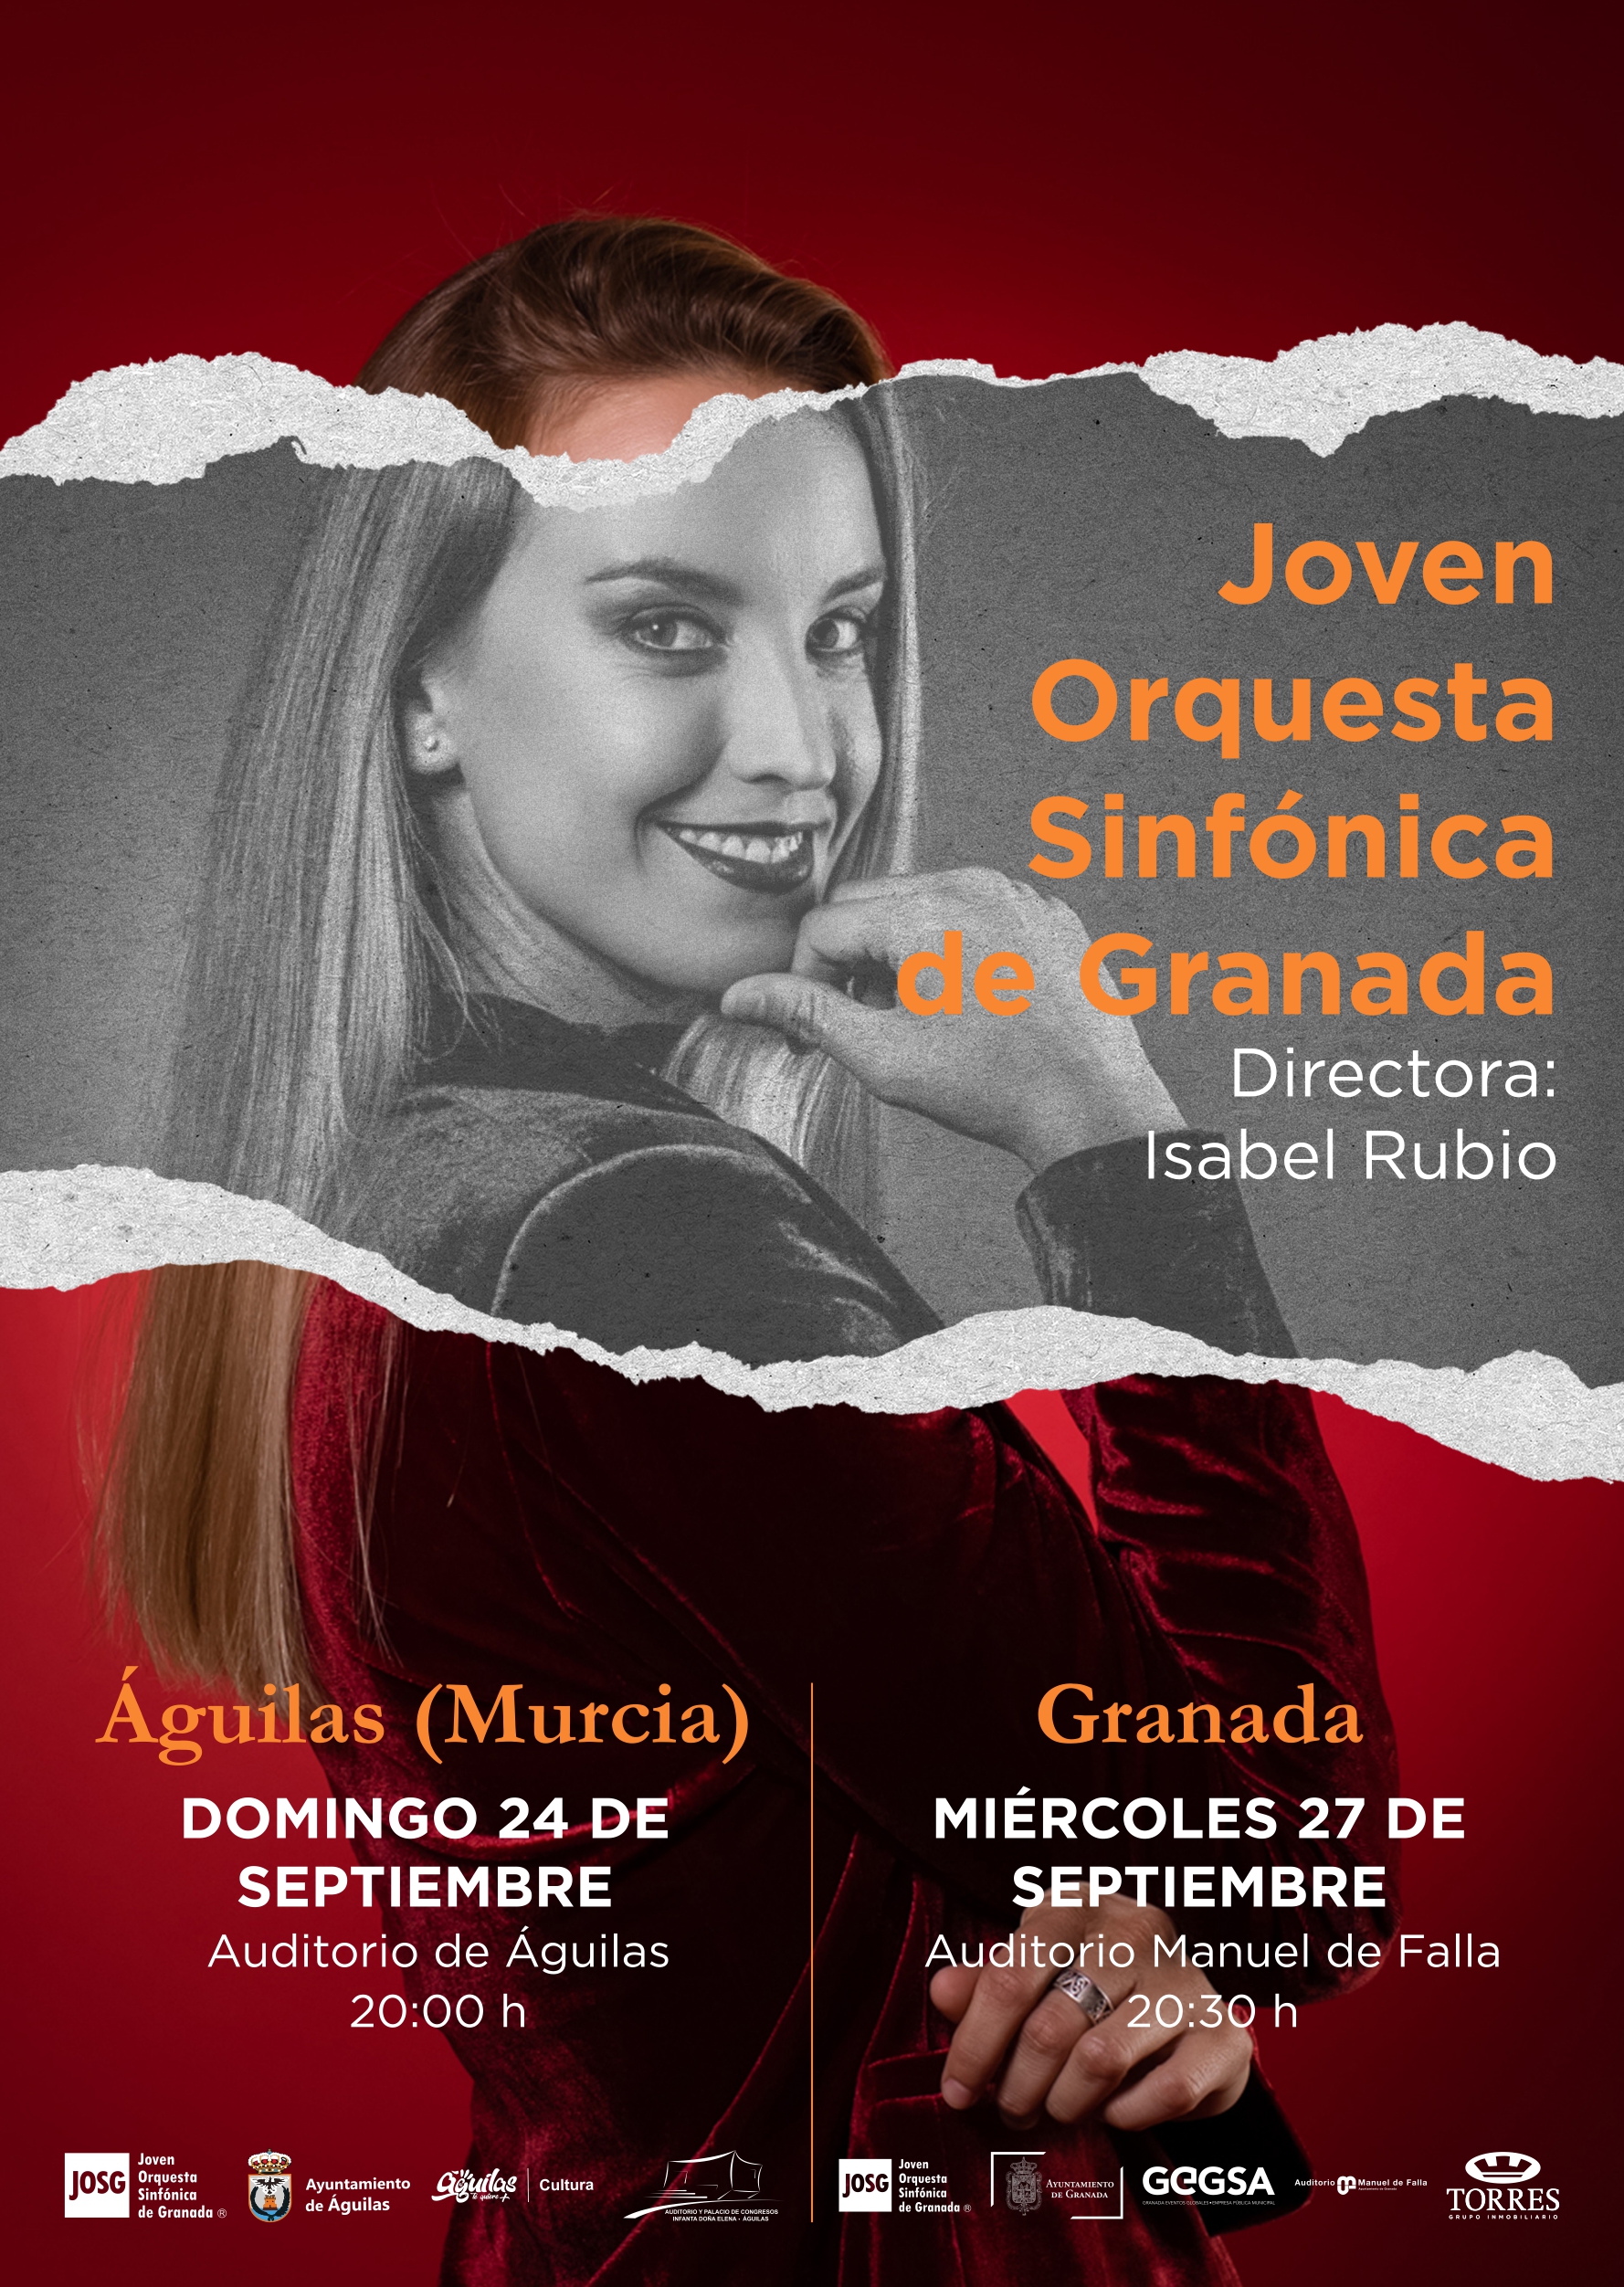 Joven Orquesta Sinfónica de Granada (JOSG)